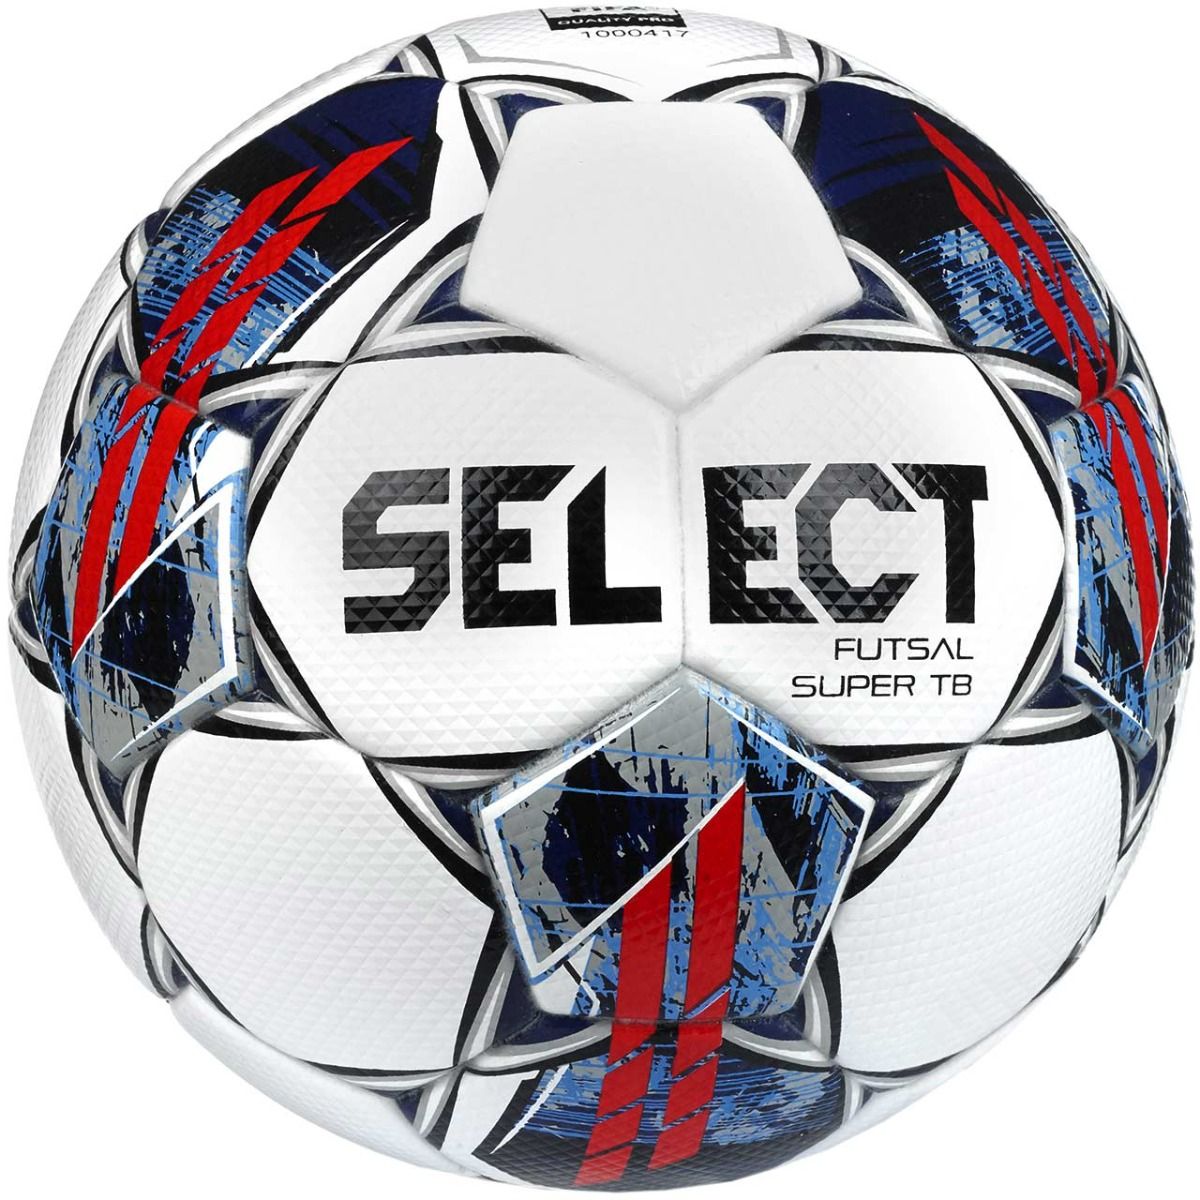 Select Fotbalový míč Futsal Super TB FIFA Quality Pro 22 17692 Velikost 4